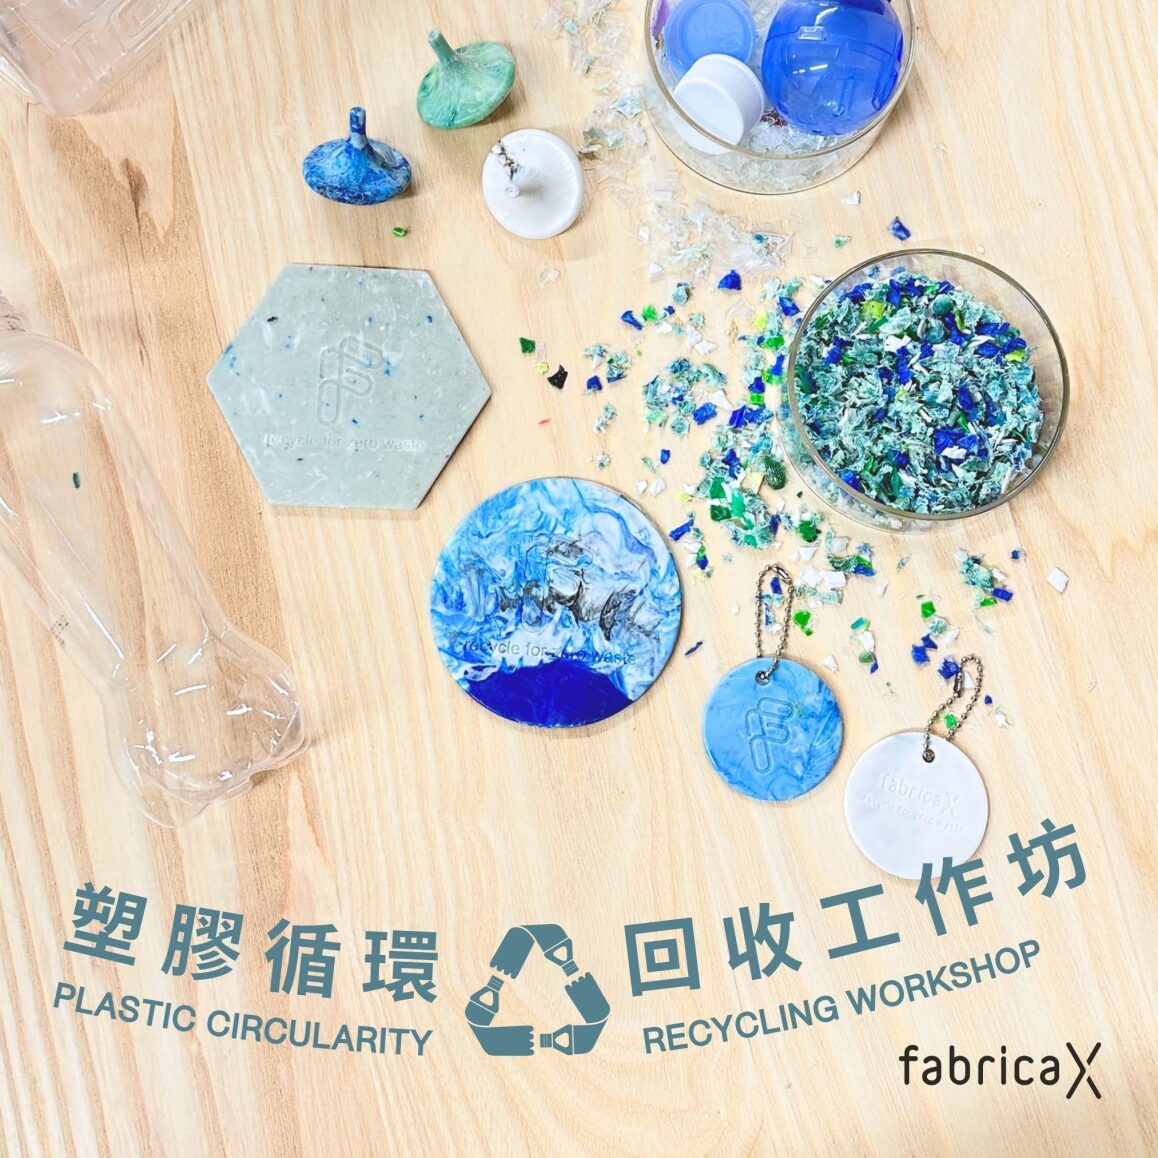 塑膠循環 - 回收工作坊